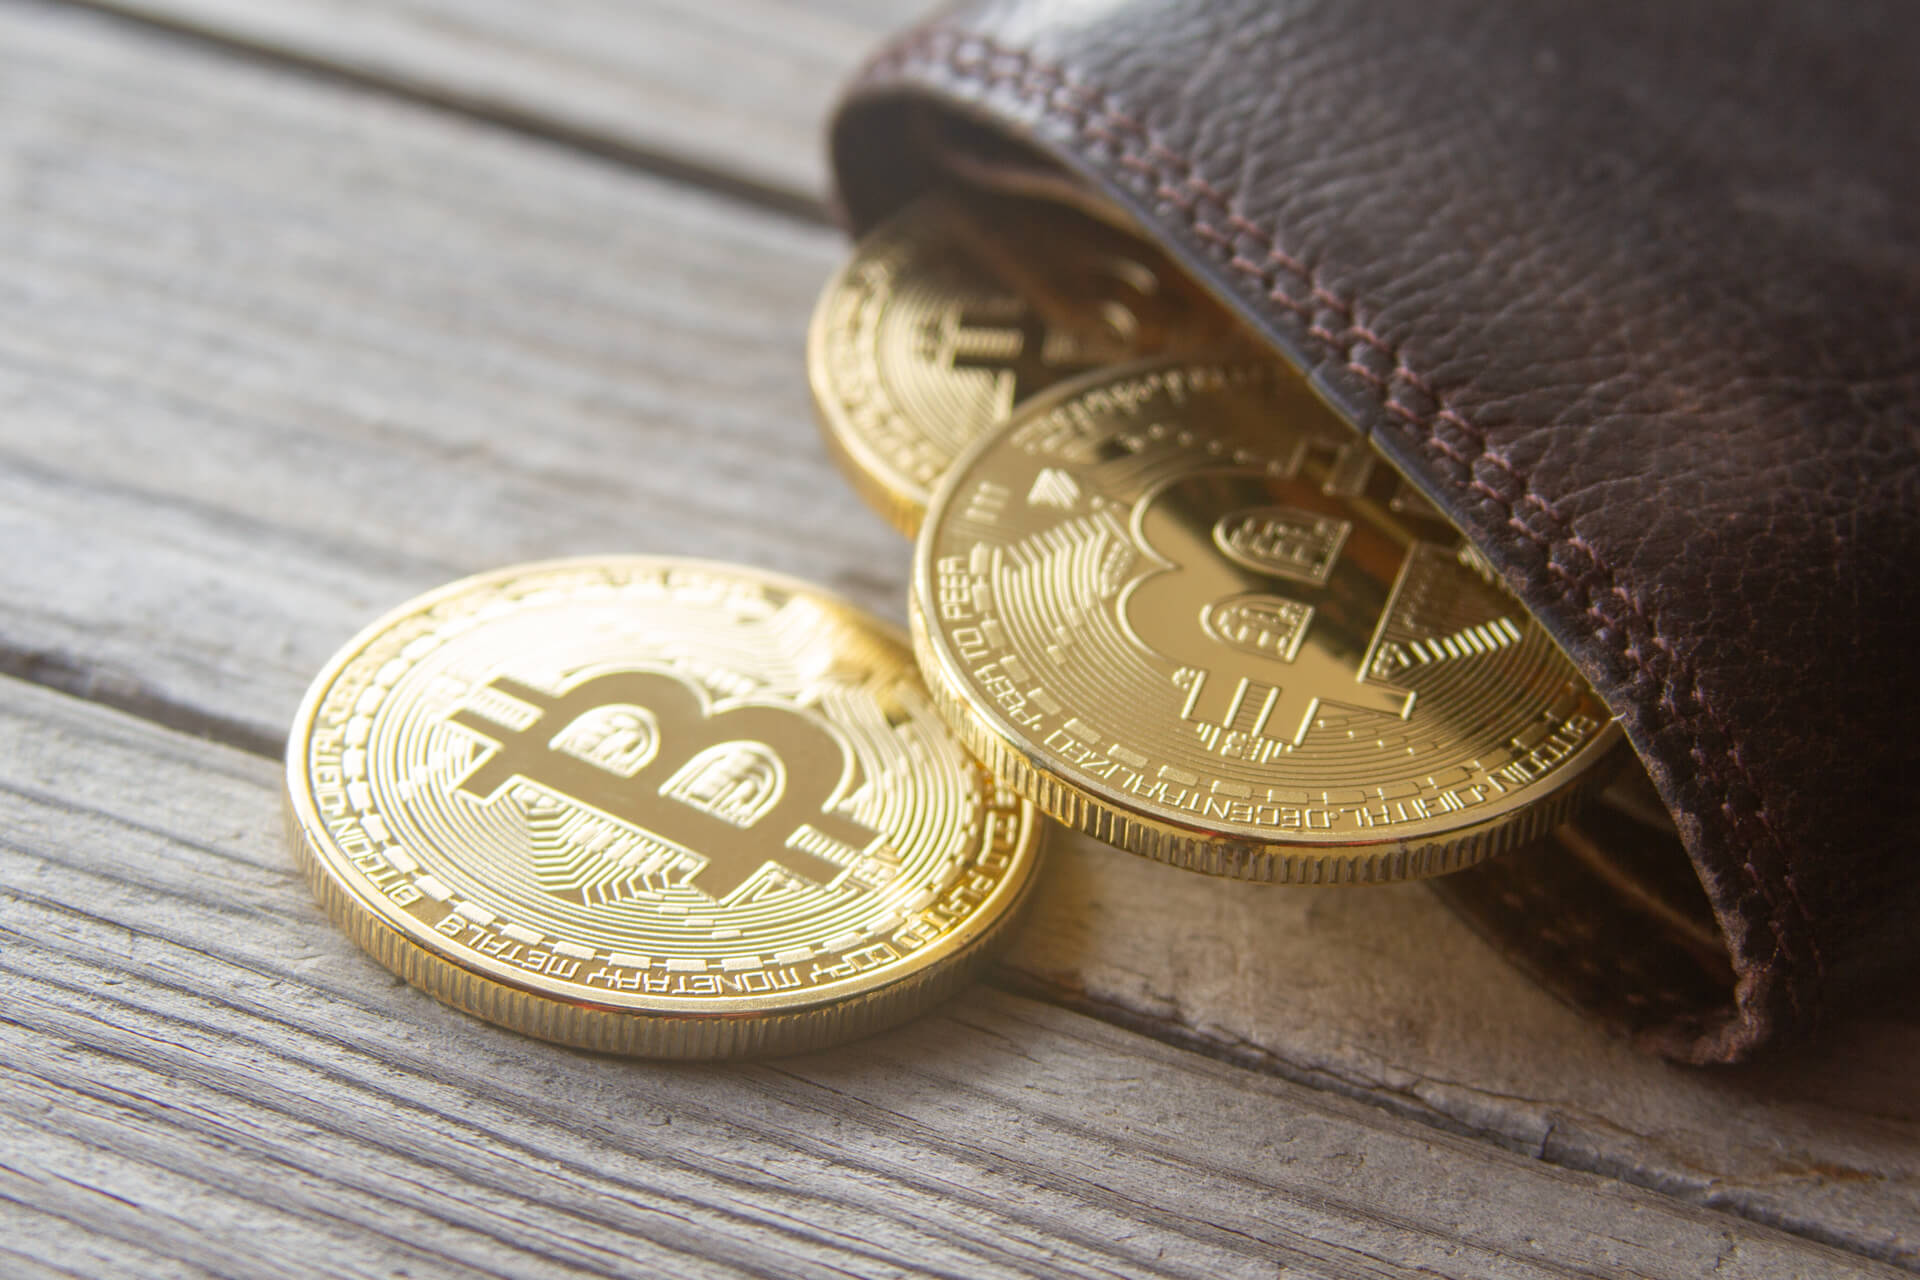 Max coin wallet mining bitcoins dappt crypto price prediction